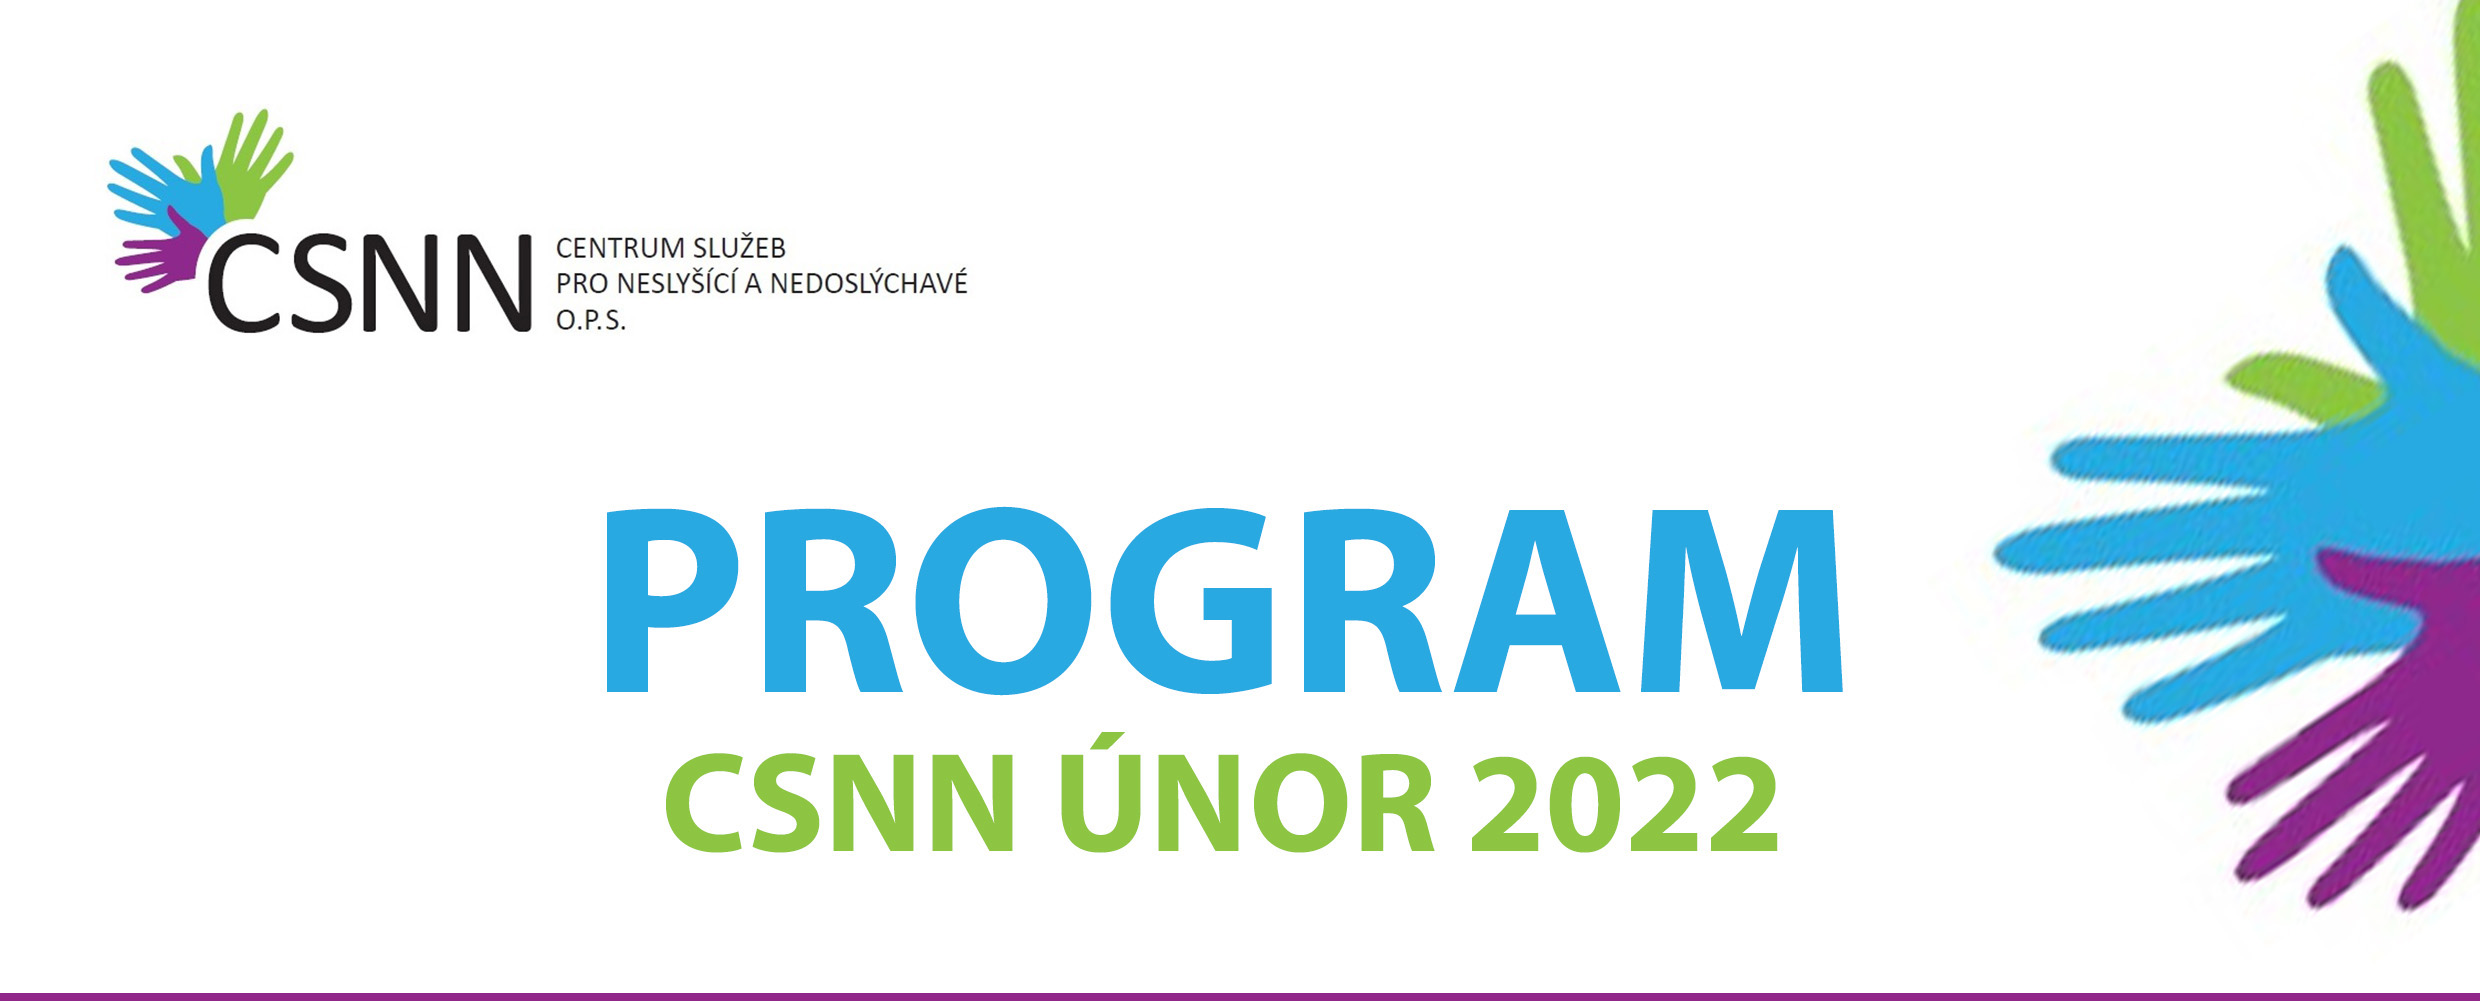 Program únor 2022